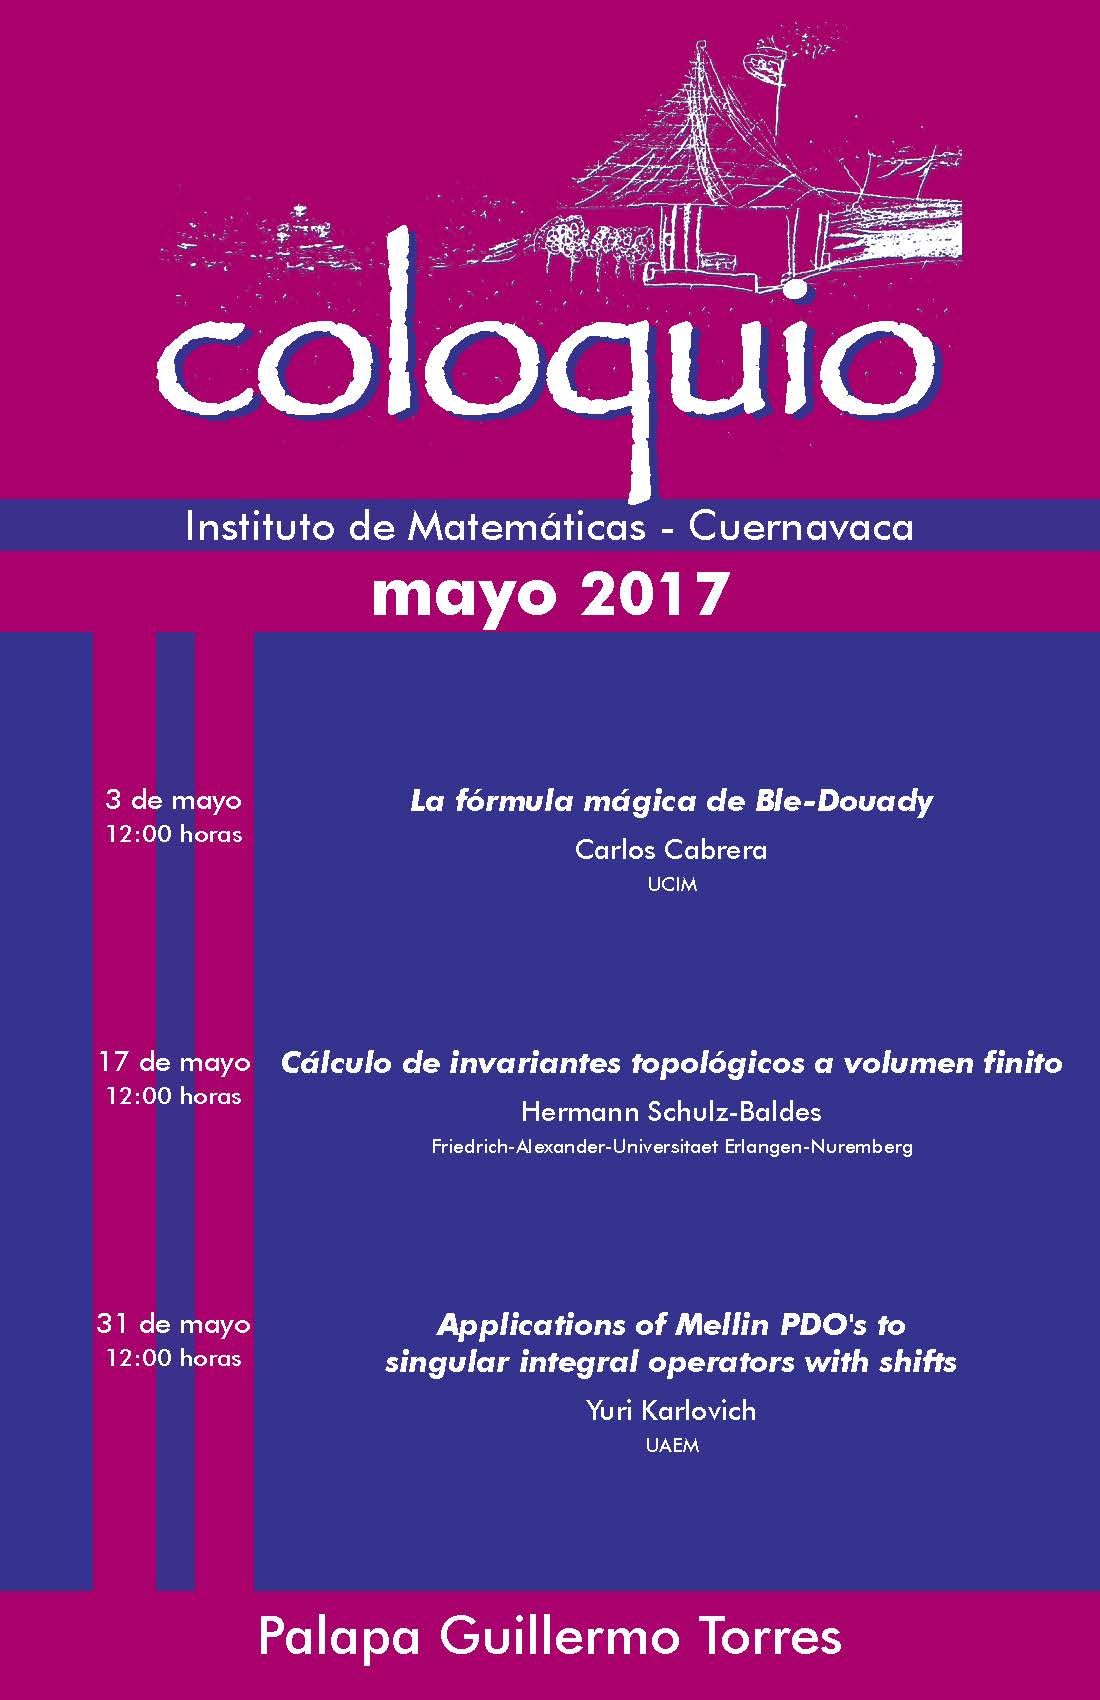 Mayo: Sesiones para Coloquio de la Unidad Cuernavaca 